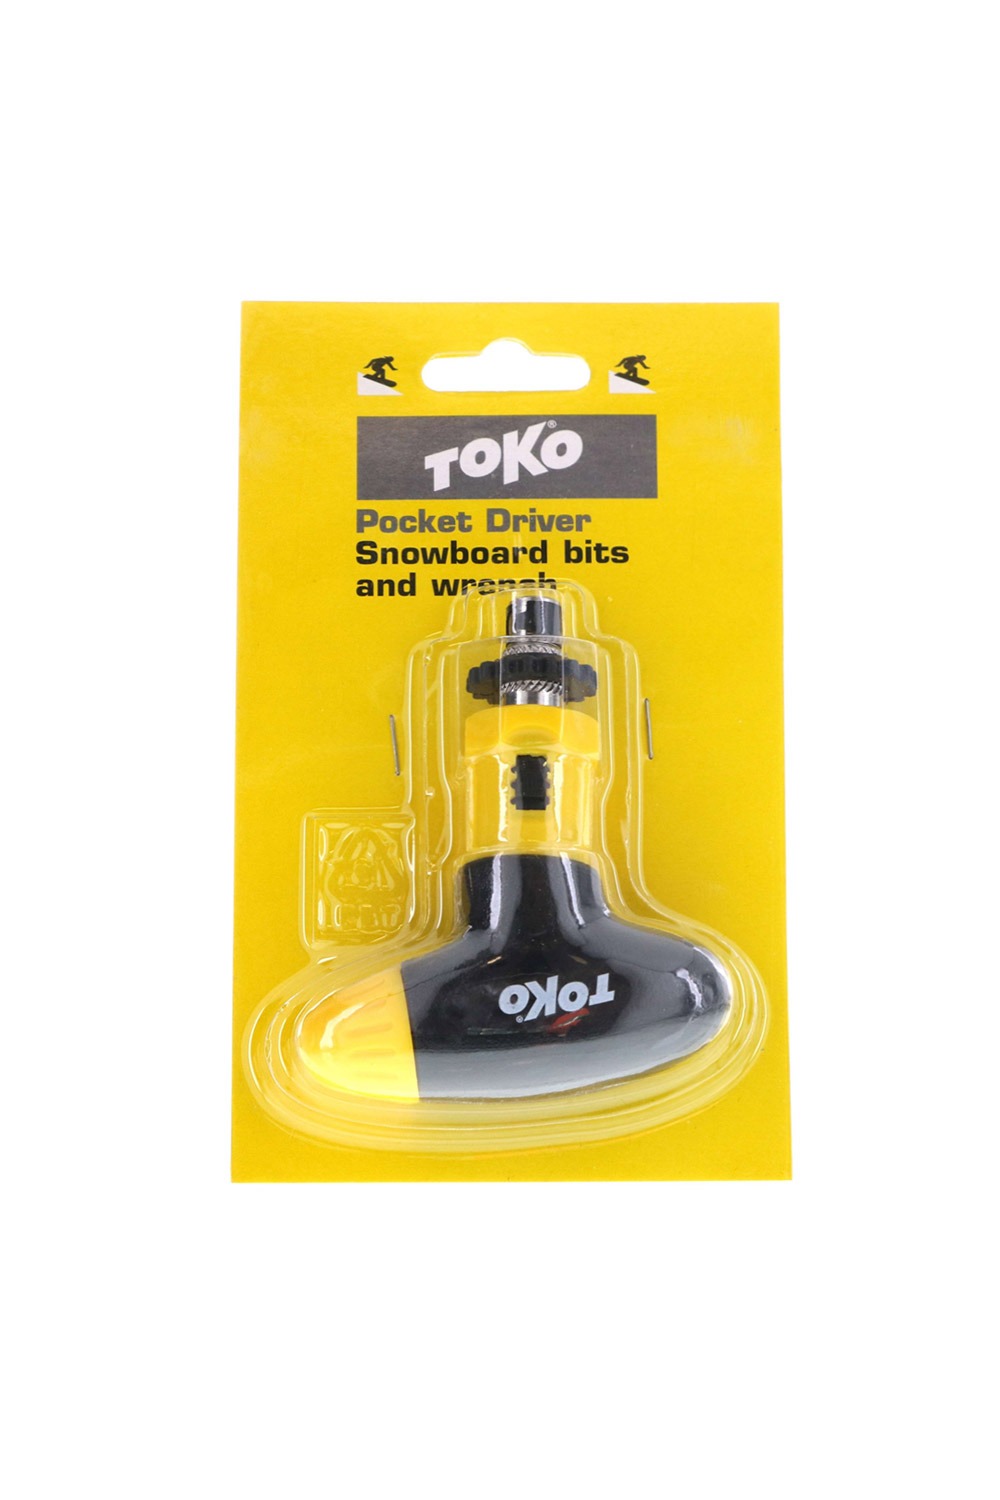 토코 다용도 포켓 드라이버 TOKO POCKET DRIVER/TOKO POCKET DRIVER/5544440_HTK30000_DHTK30000